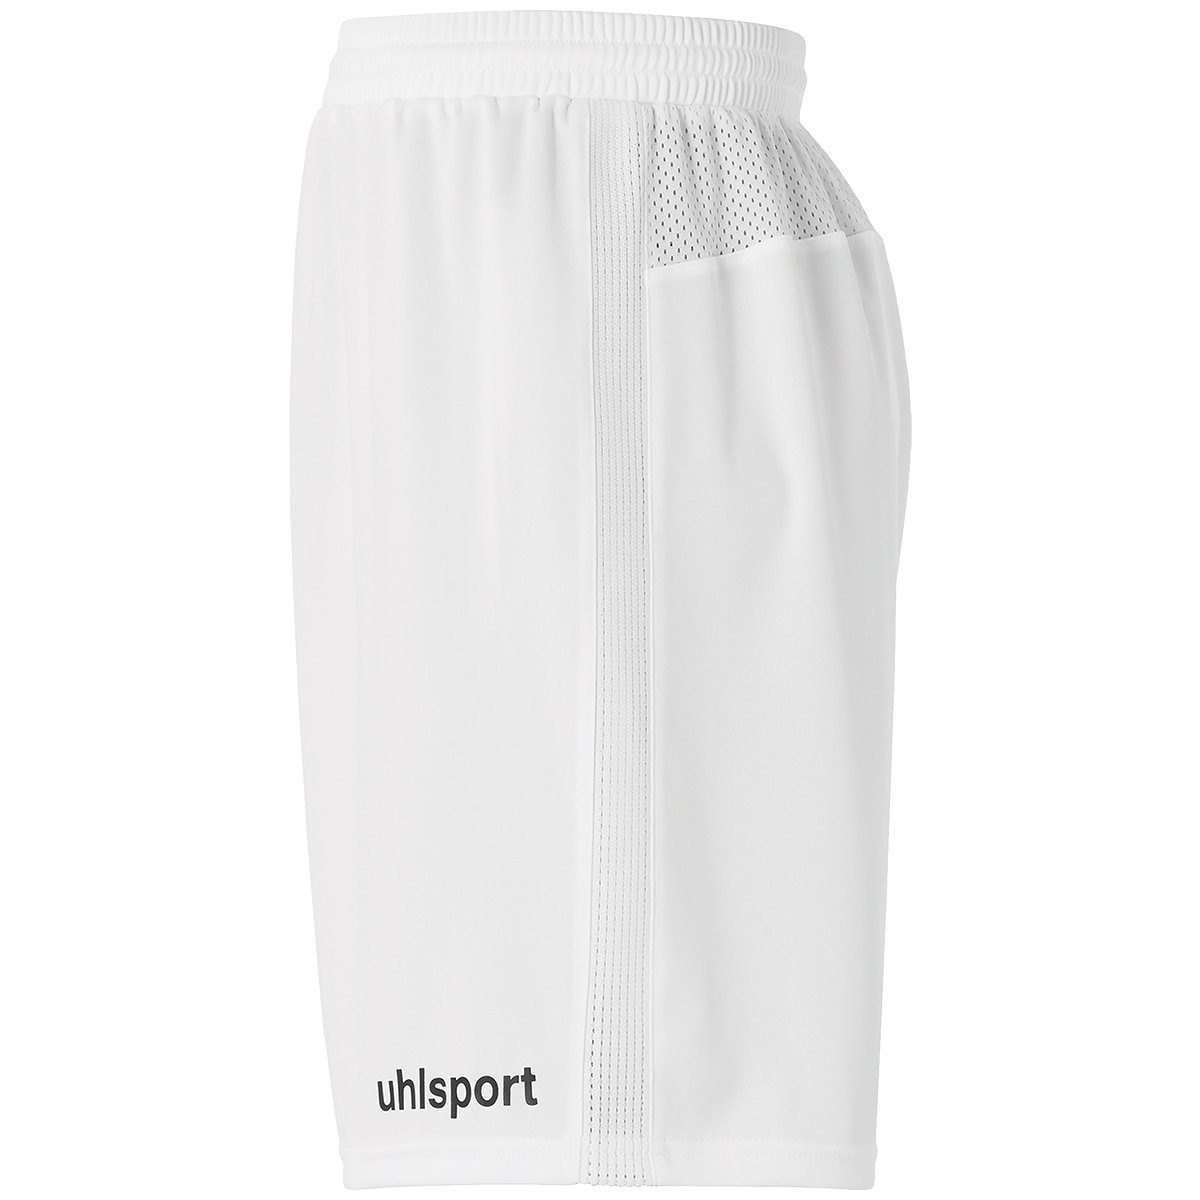 SHORTS uhlsport uhlsport weiß/schwarz Shorts Shorts PERFORMANCE